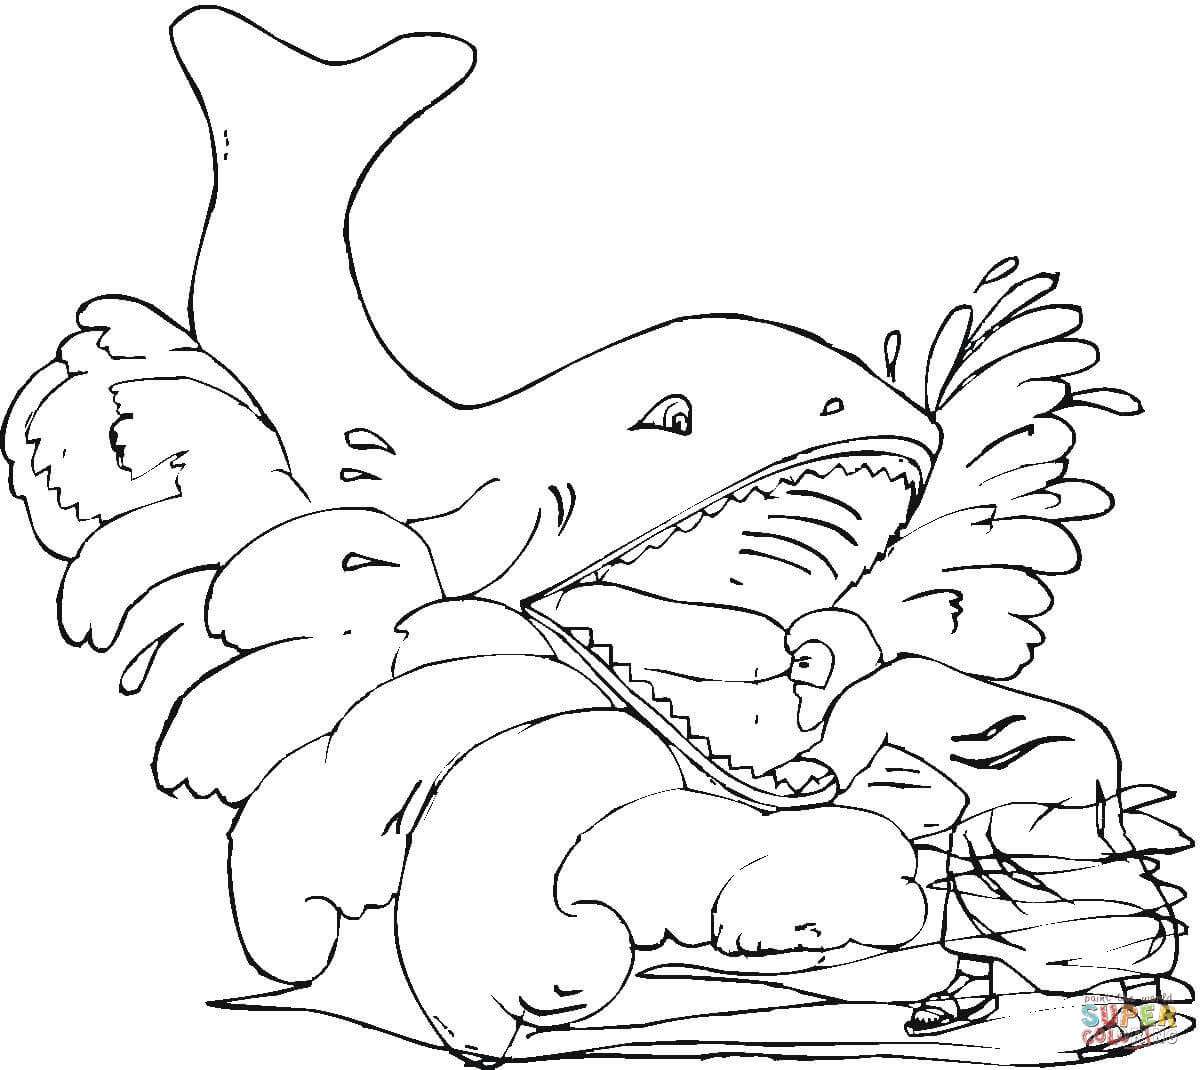 Dibujo de en las fauces de la ballena para colorear dibujos para colorear imprimir gratis